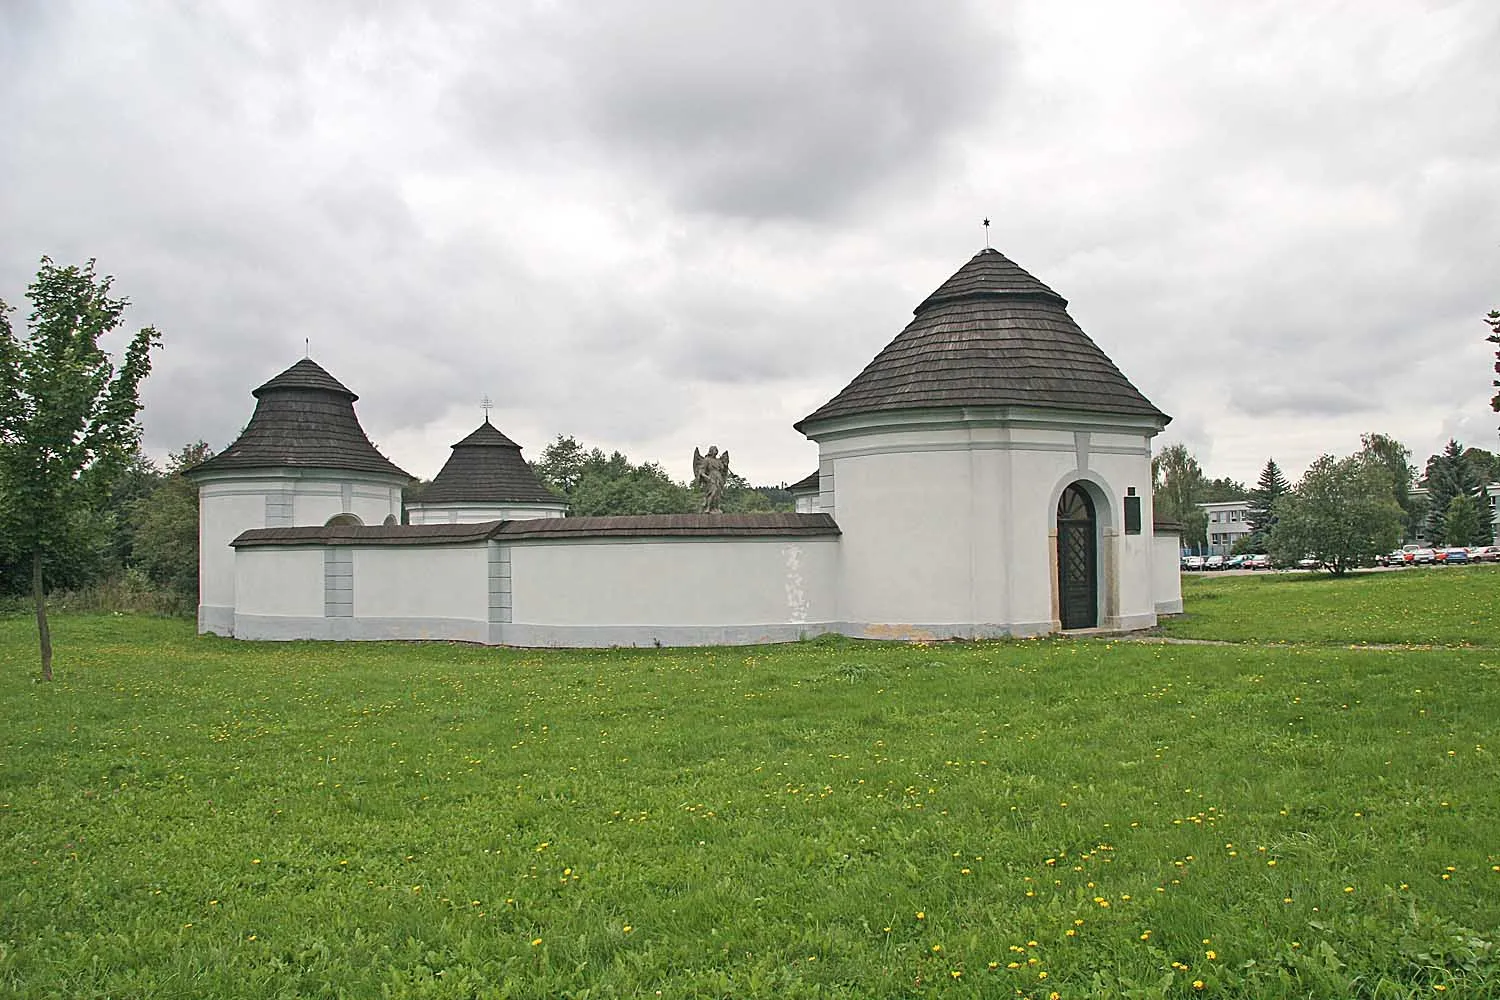 Photo showing: Dolní hřbitov ve Žďáru nad Sázavou, district Žďár nad Sázavou, Czech Republic
autor: Prazak

Date: 6. 9. 2006